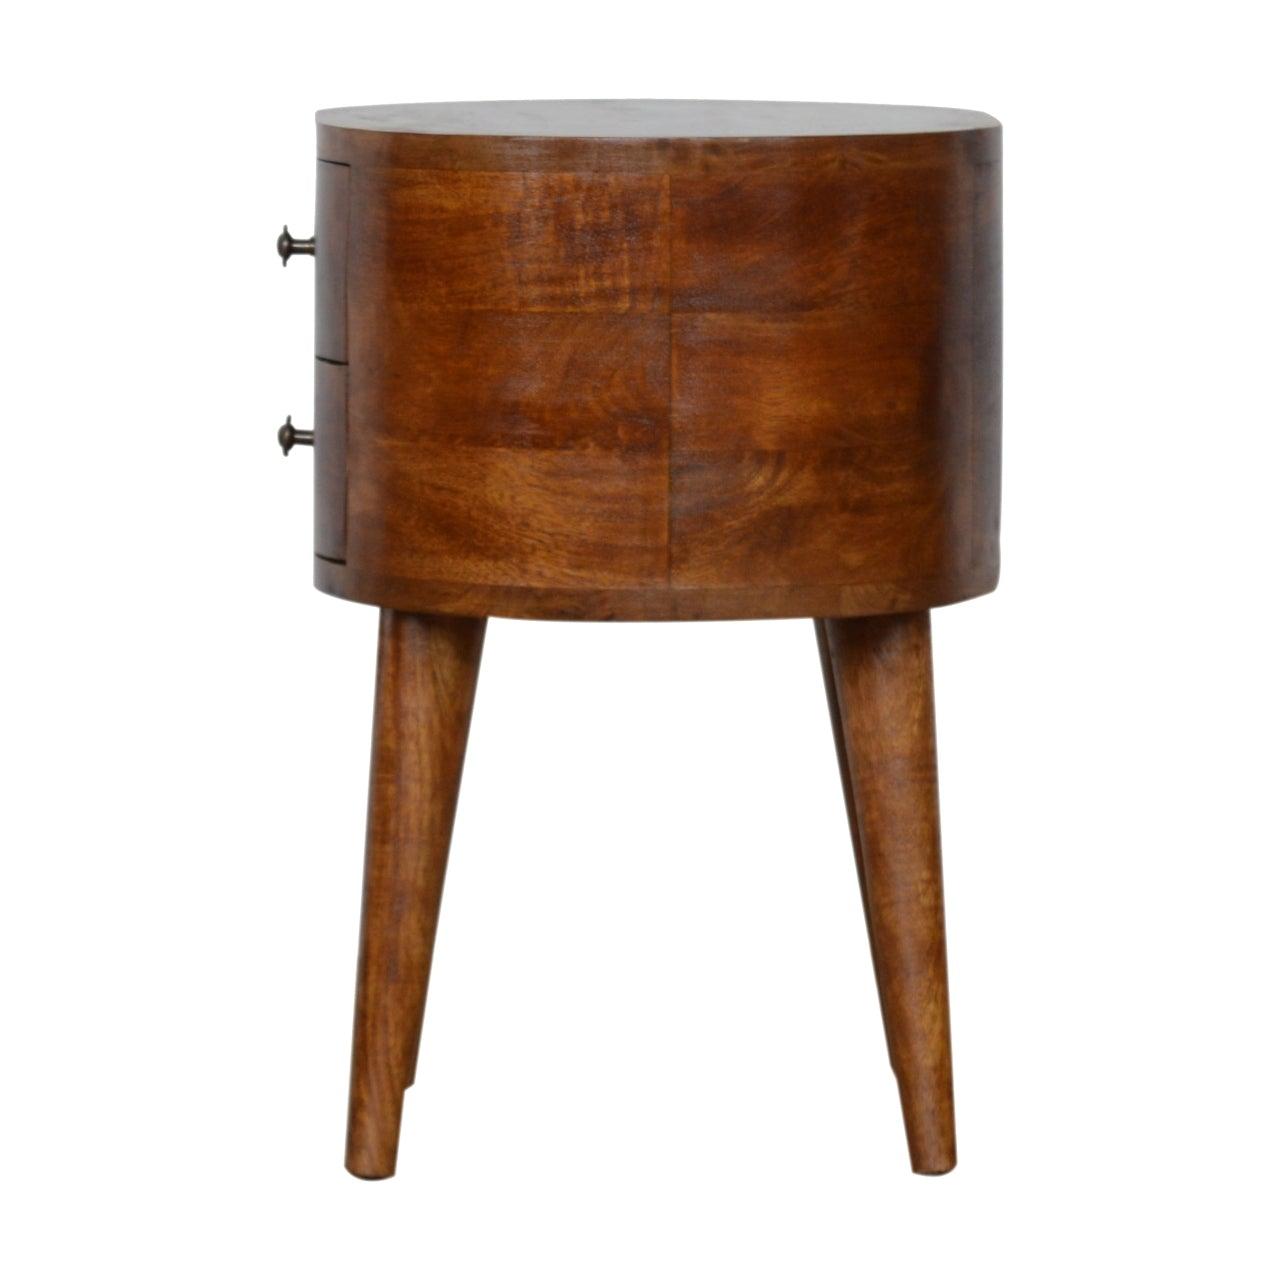 Chestnut rounded bedside table - crimblefest furniture - image 8